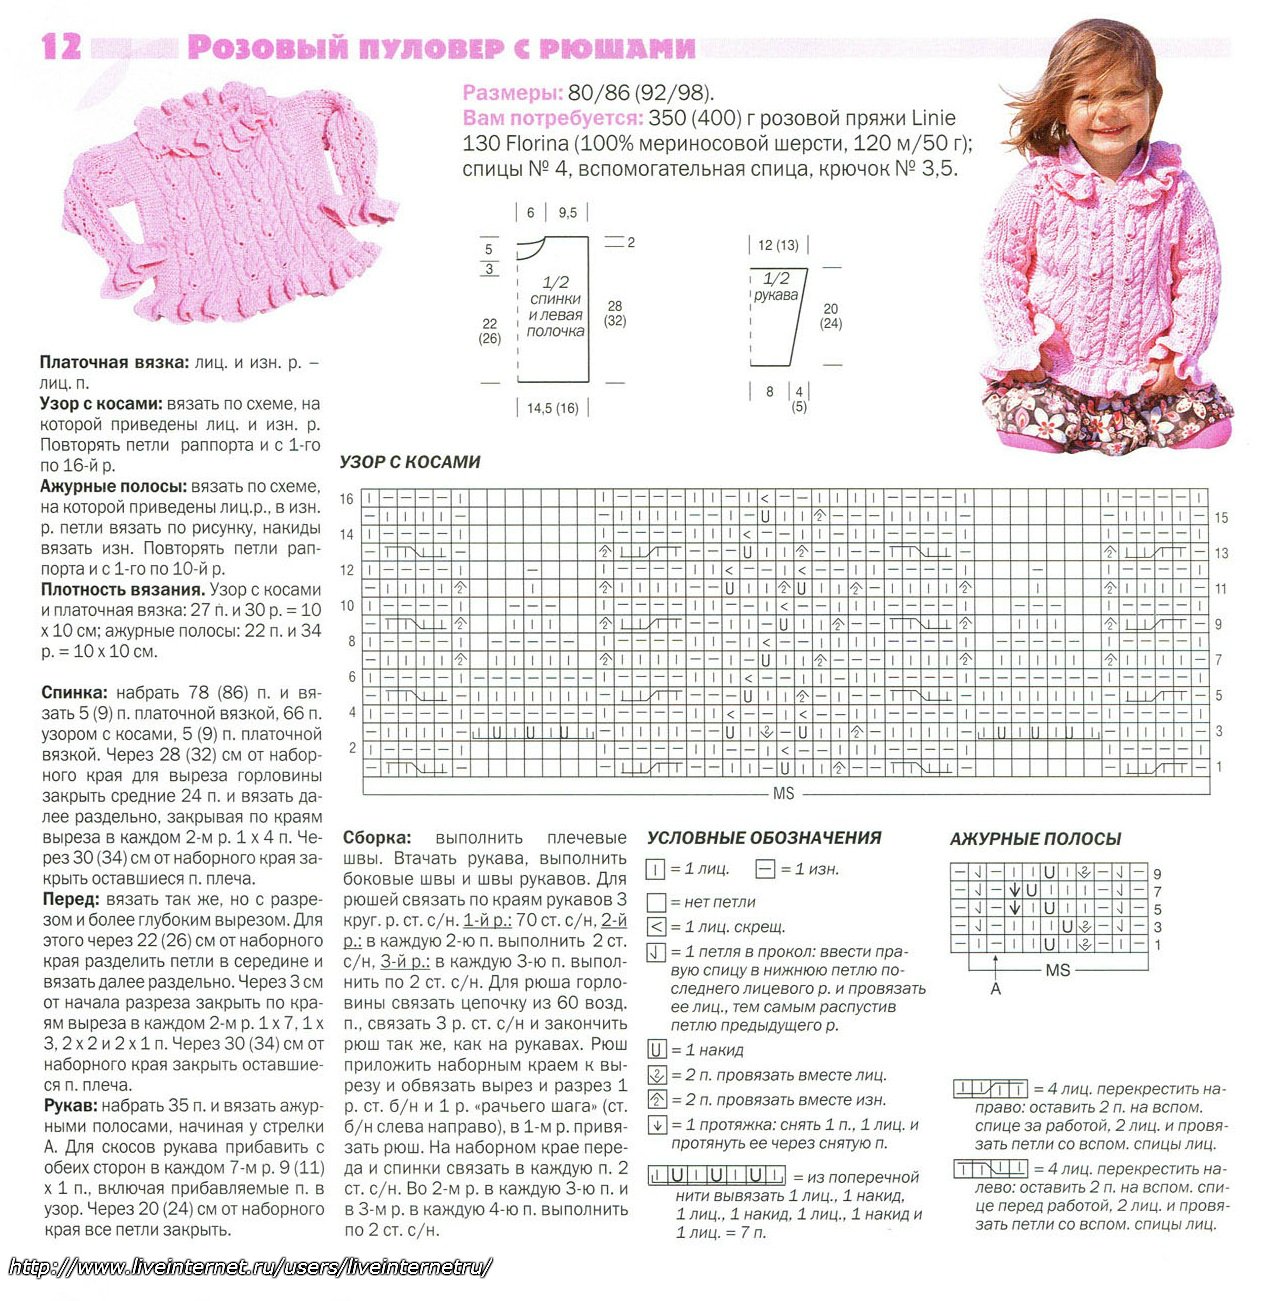 Вязание для детей от 1 до 3 лет с описанием спицами